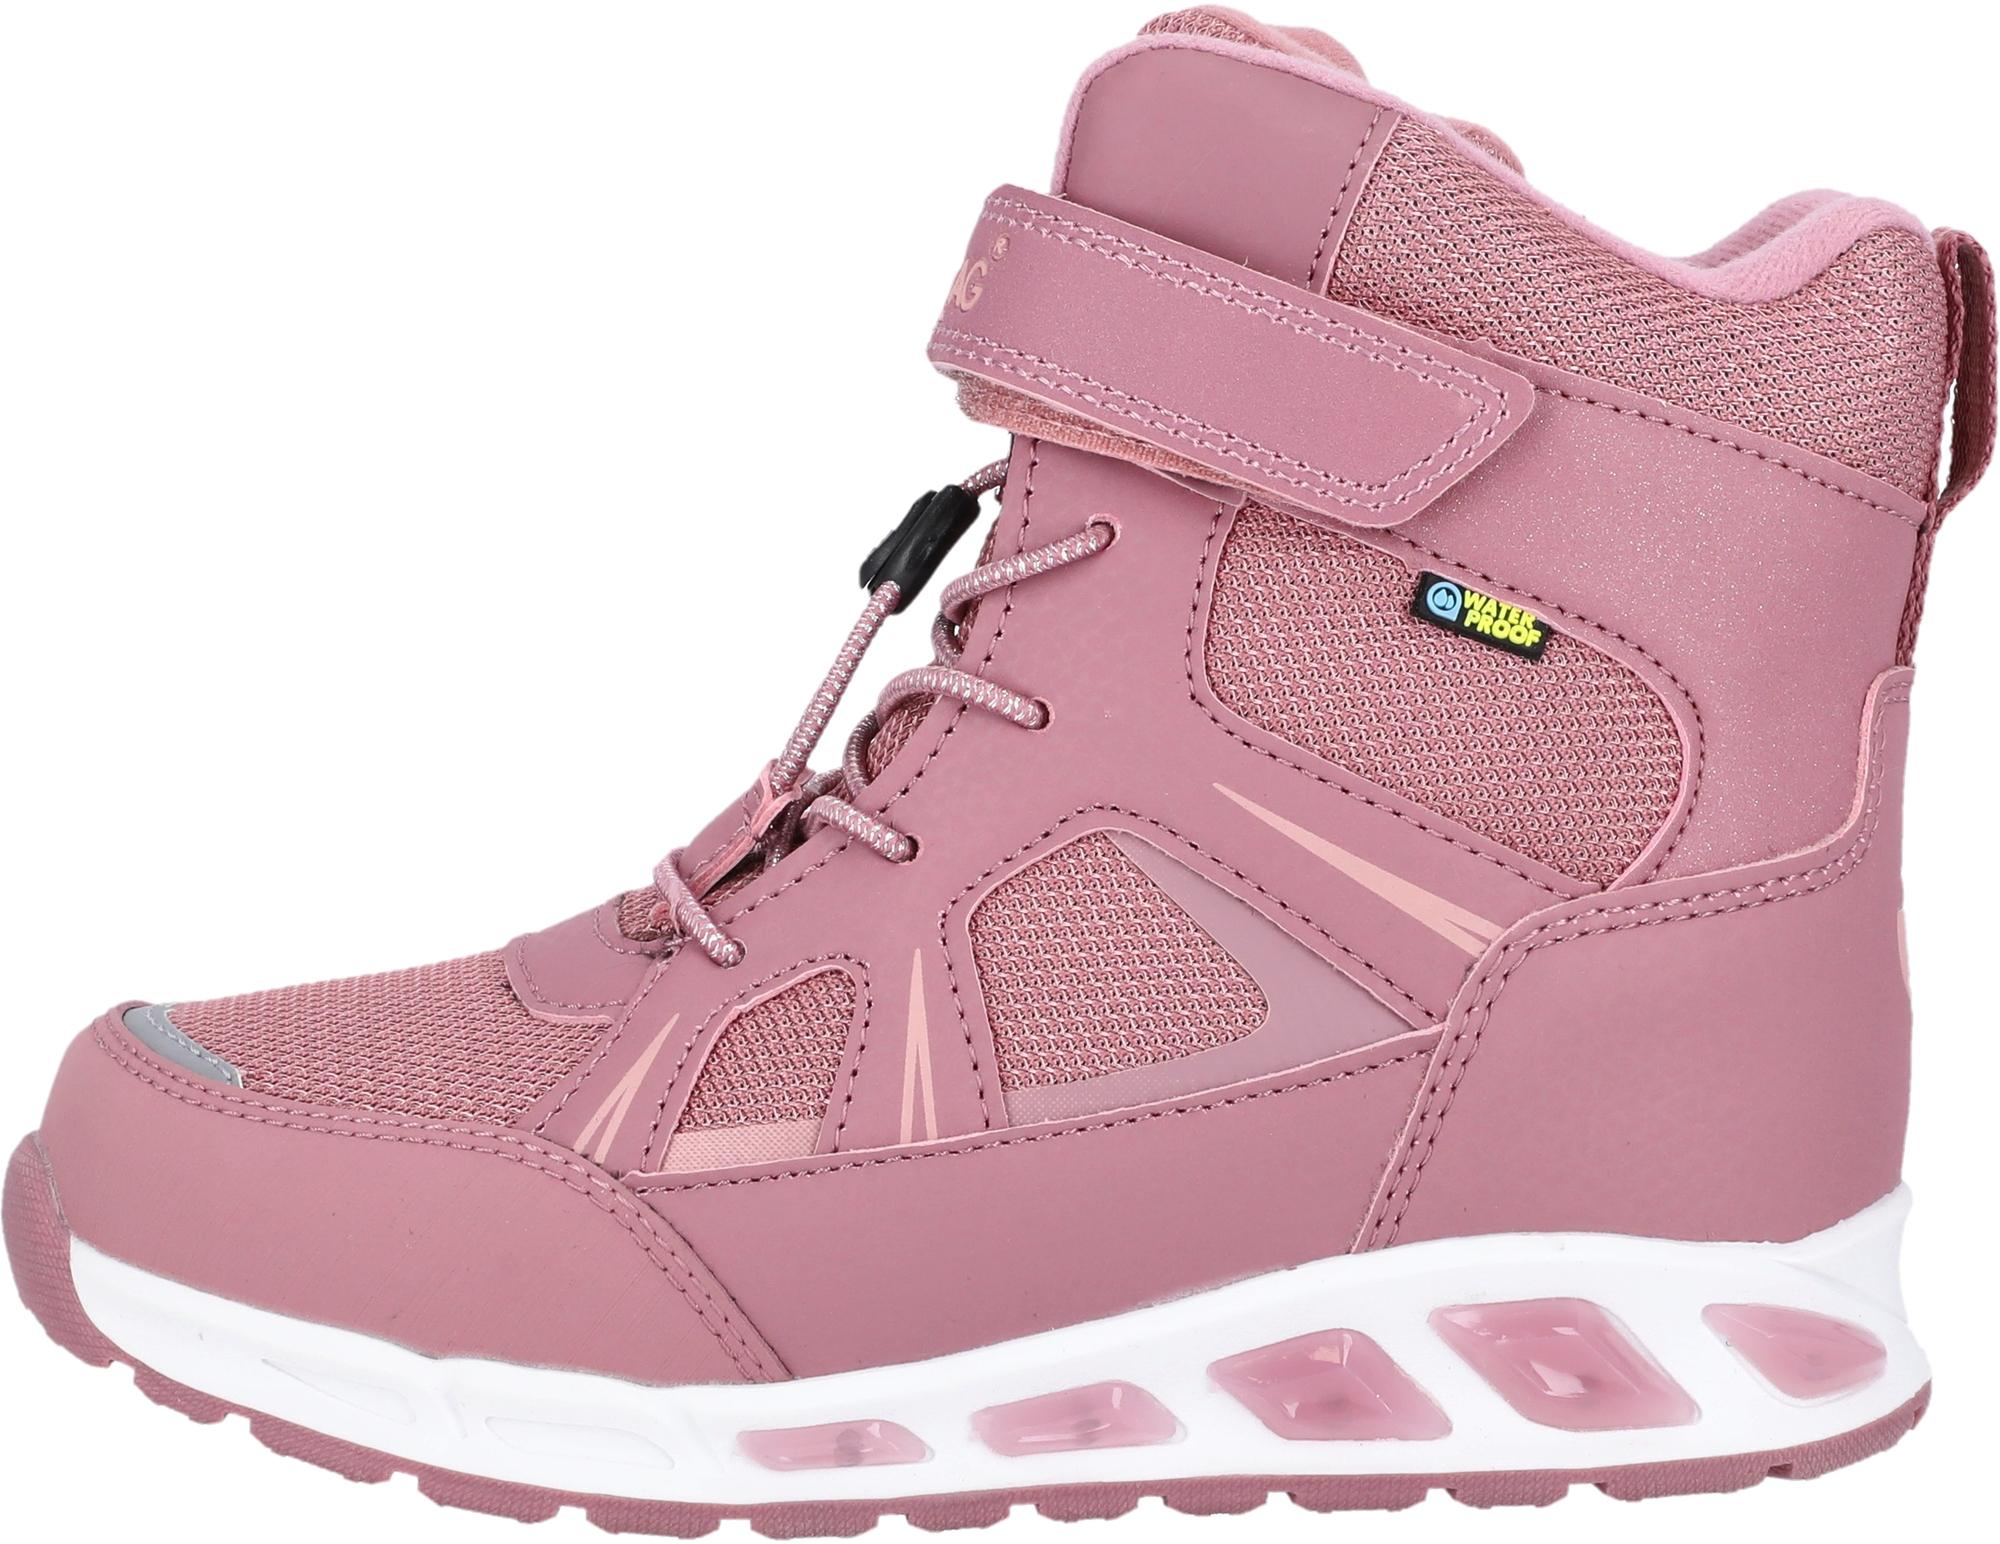 & für rosa SportScheck Kinder kaufen Stiefel im von Boots in Online Shop